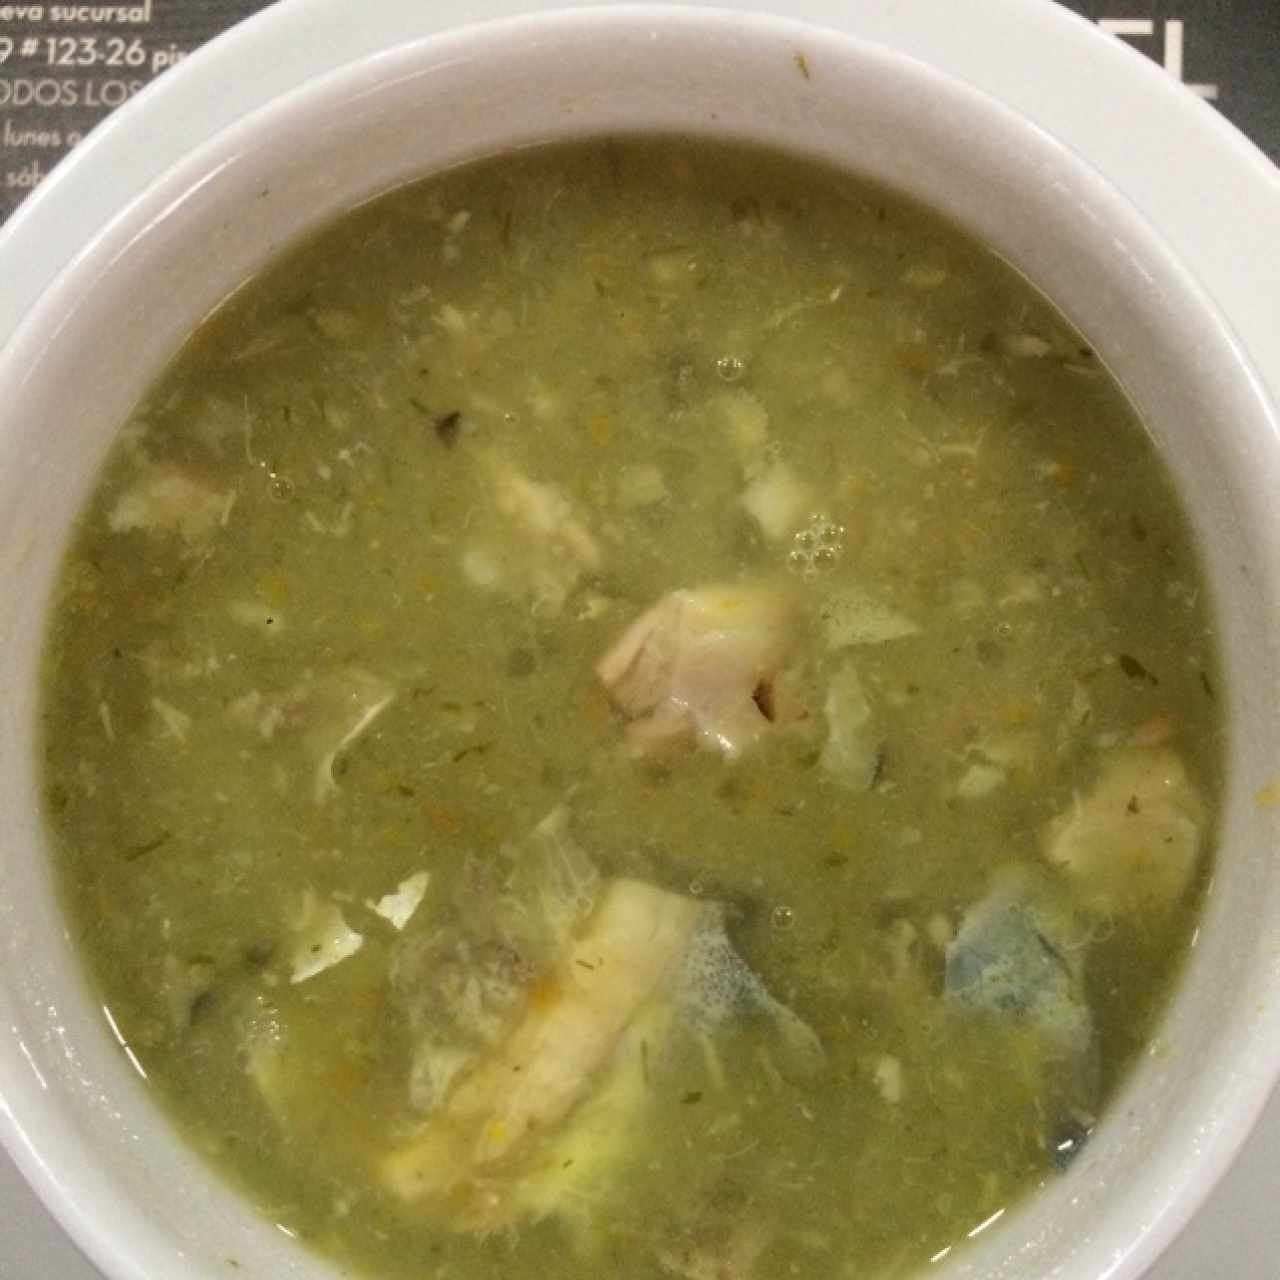 Sopa de pescado